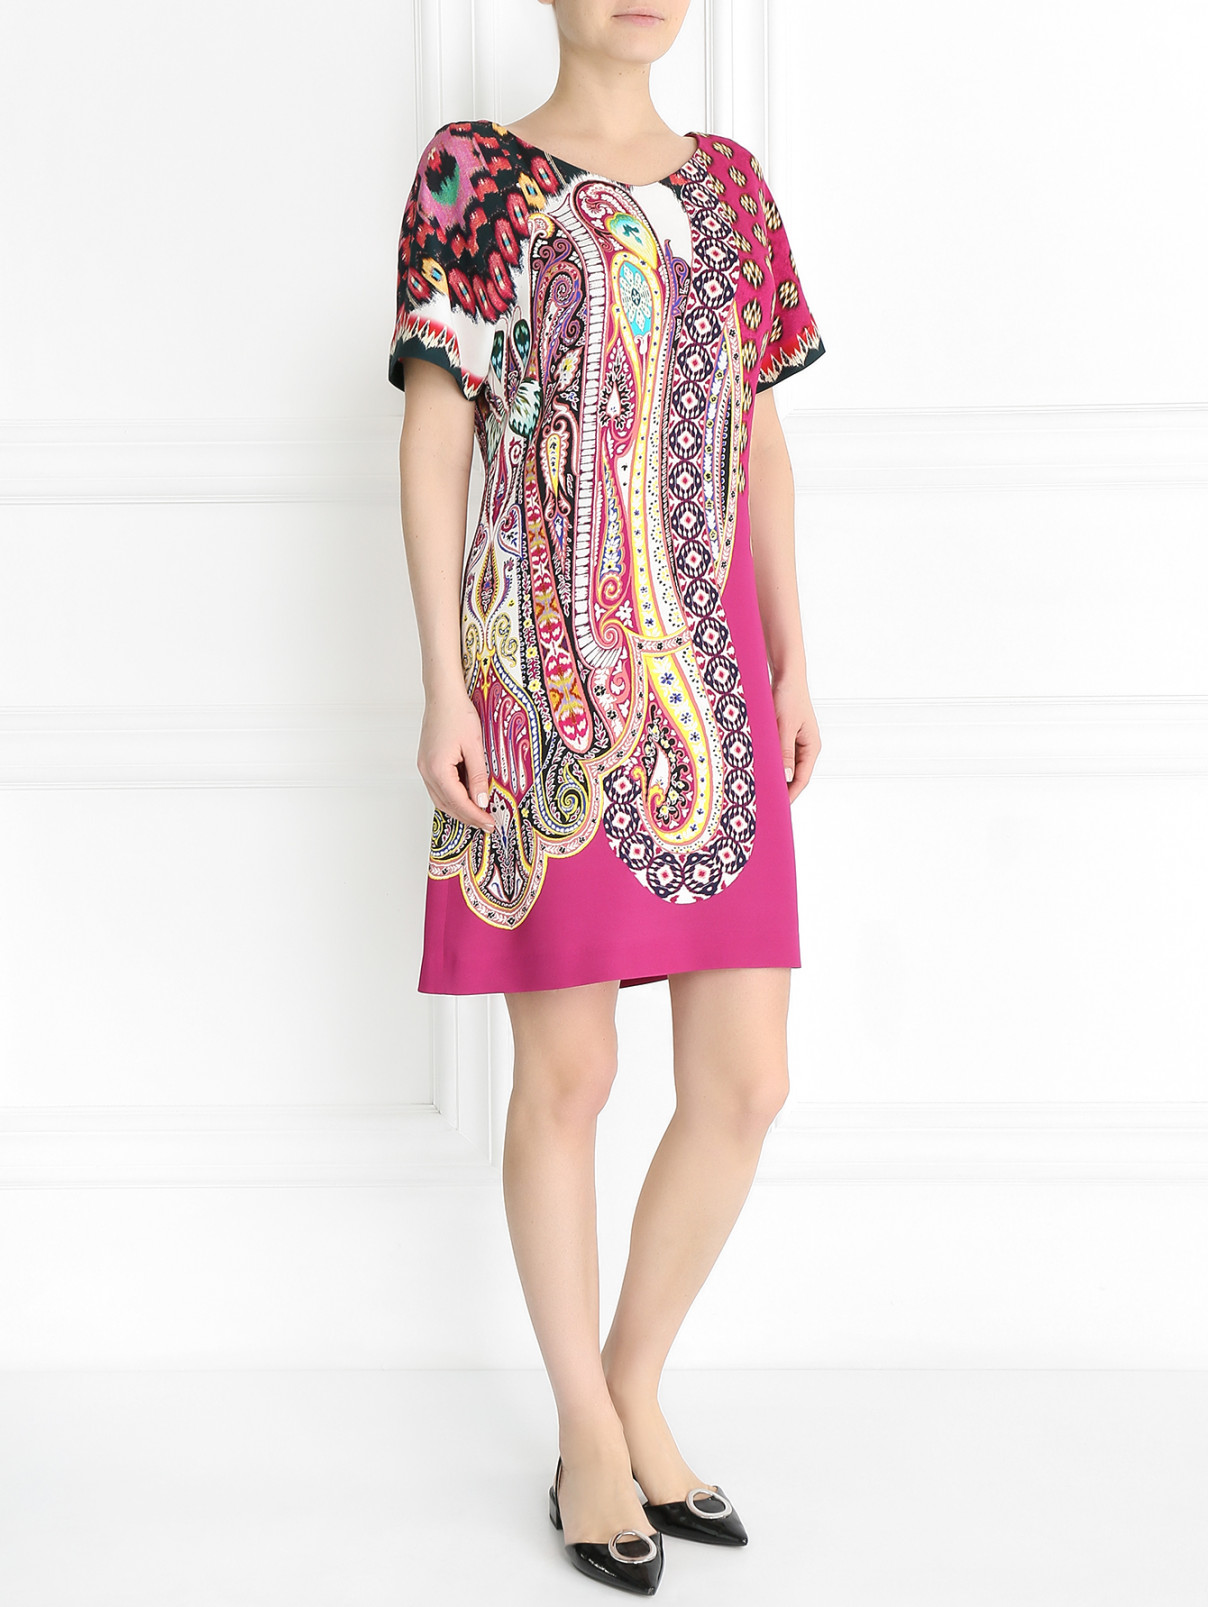 Трикотажное платье с узором "пейсли" Etro  –  Модель Общий вид  – Цвет:  Узор